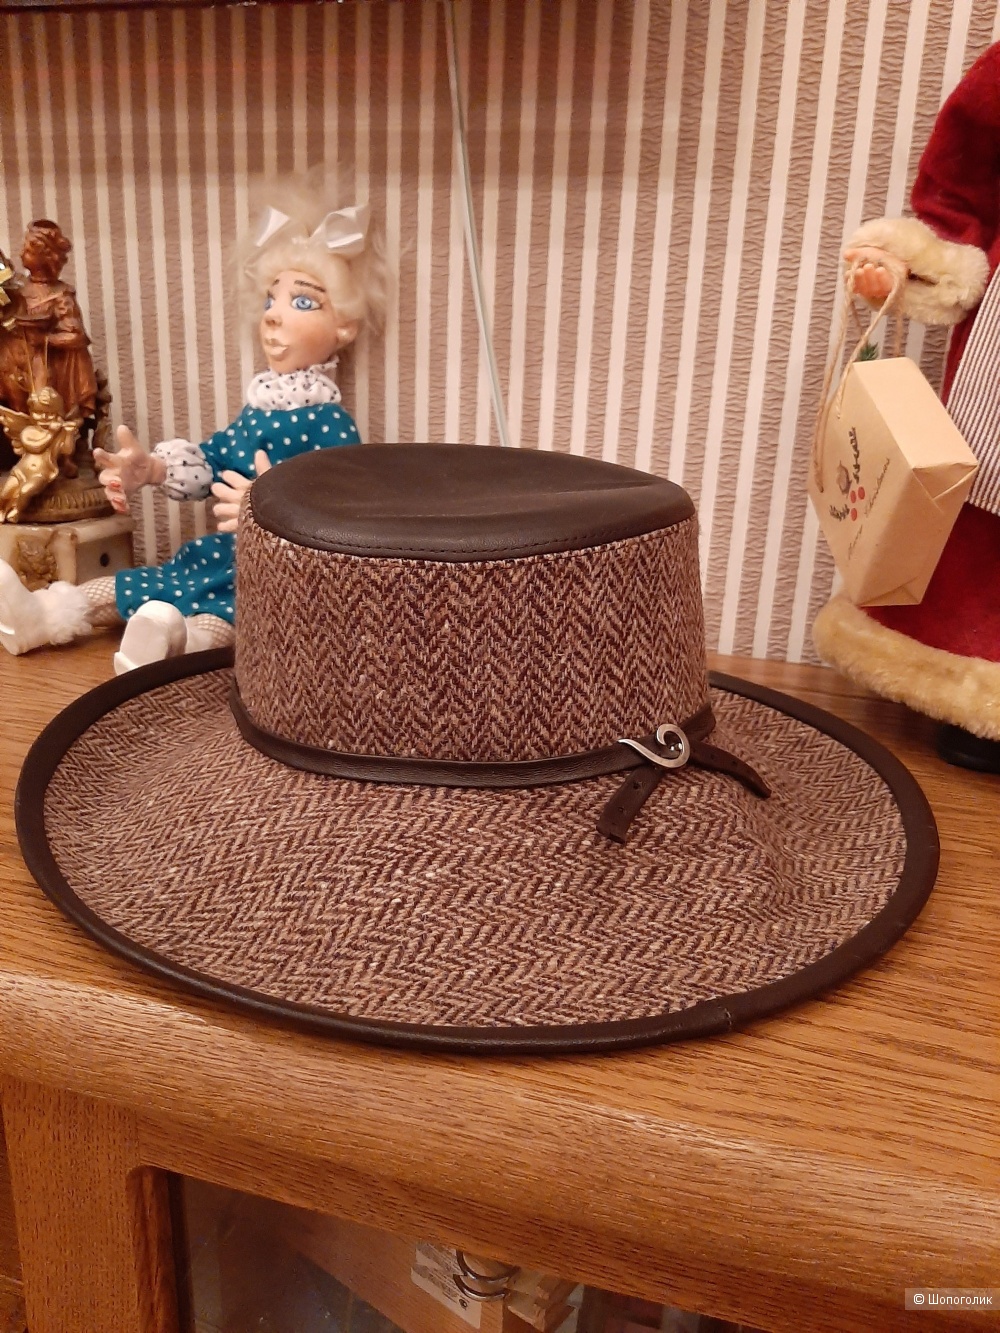 Шляпа Bronte Amsterdam р.56 см